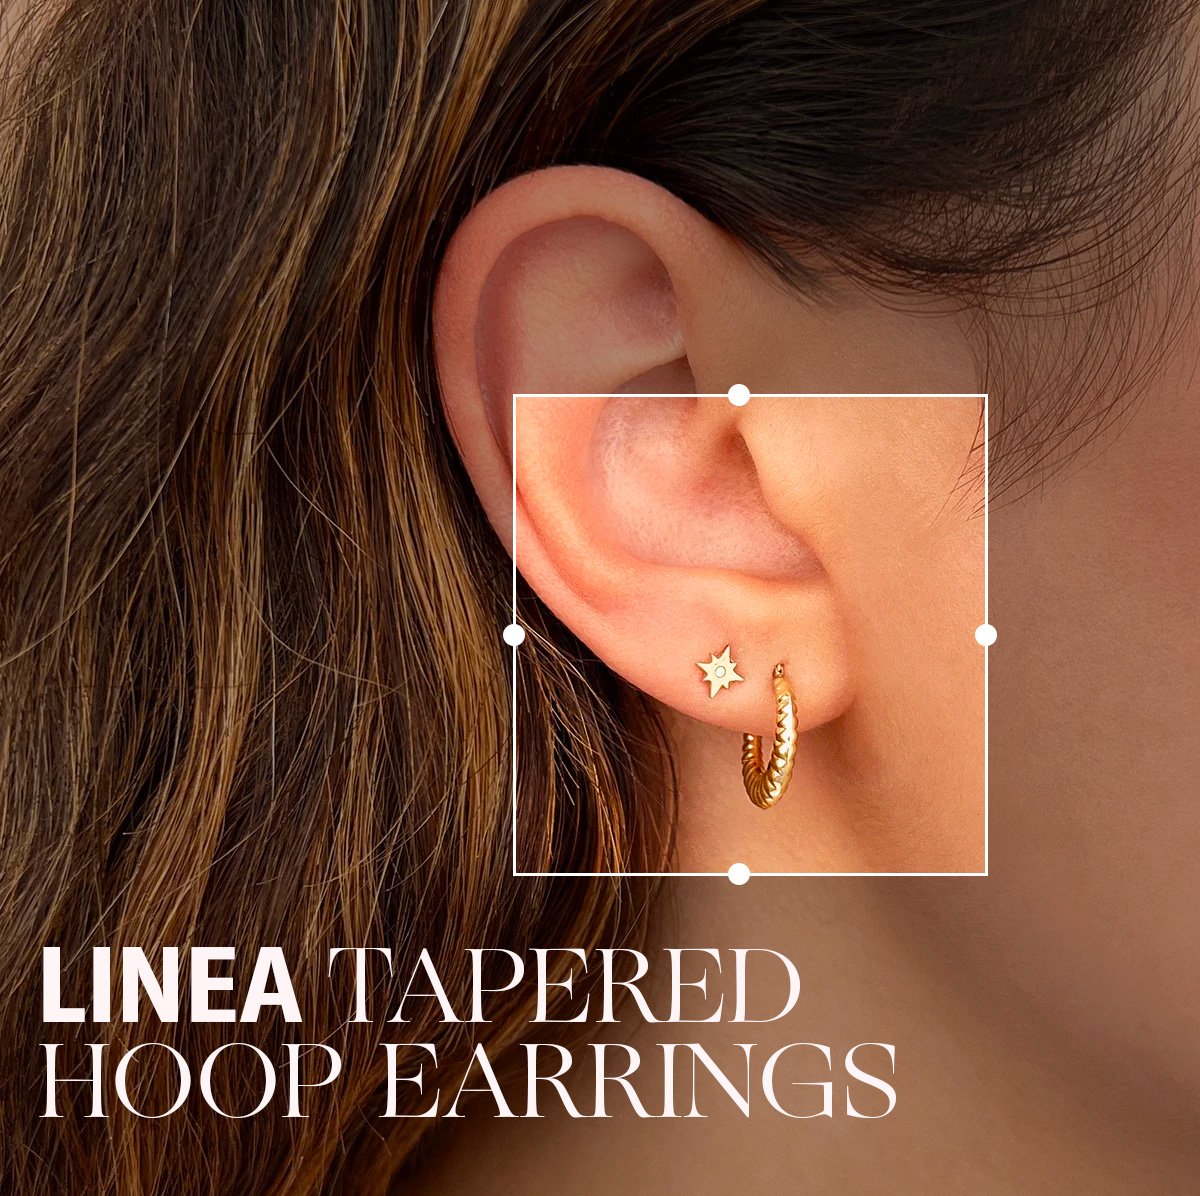 Linea Tapered Hoop Earrings